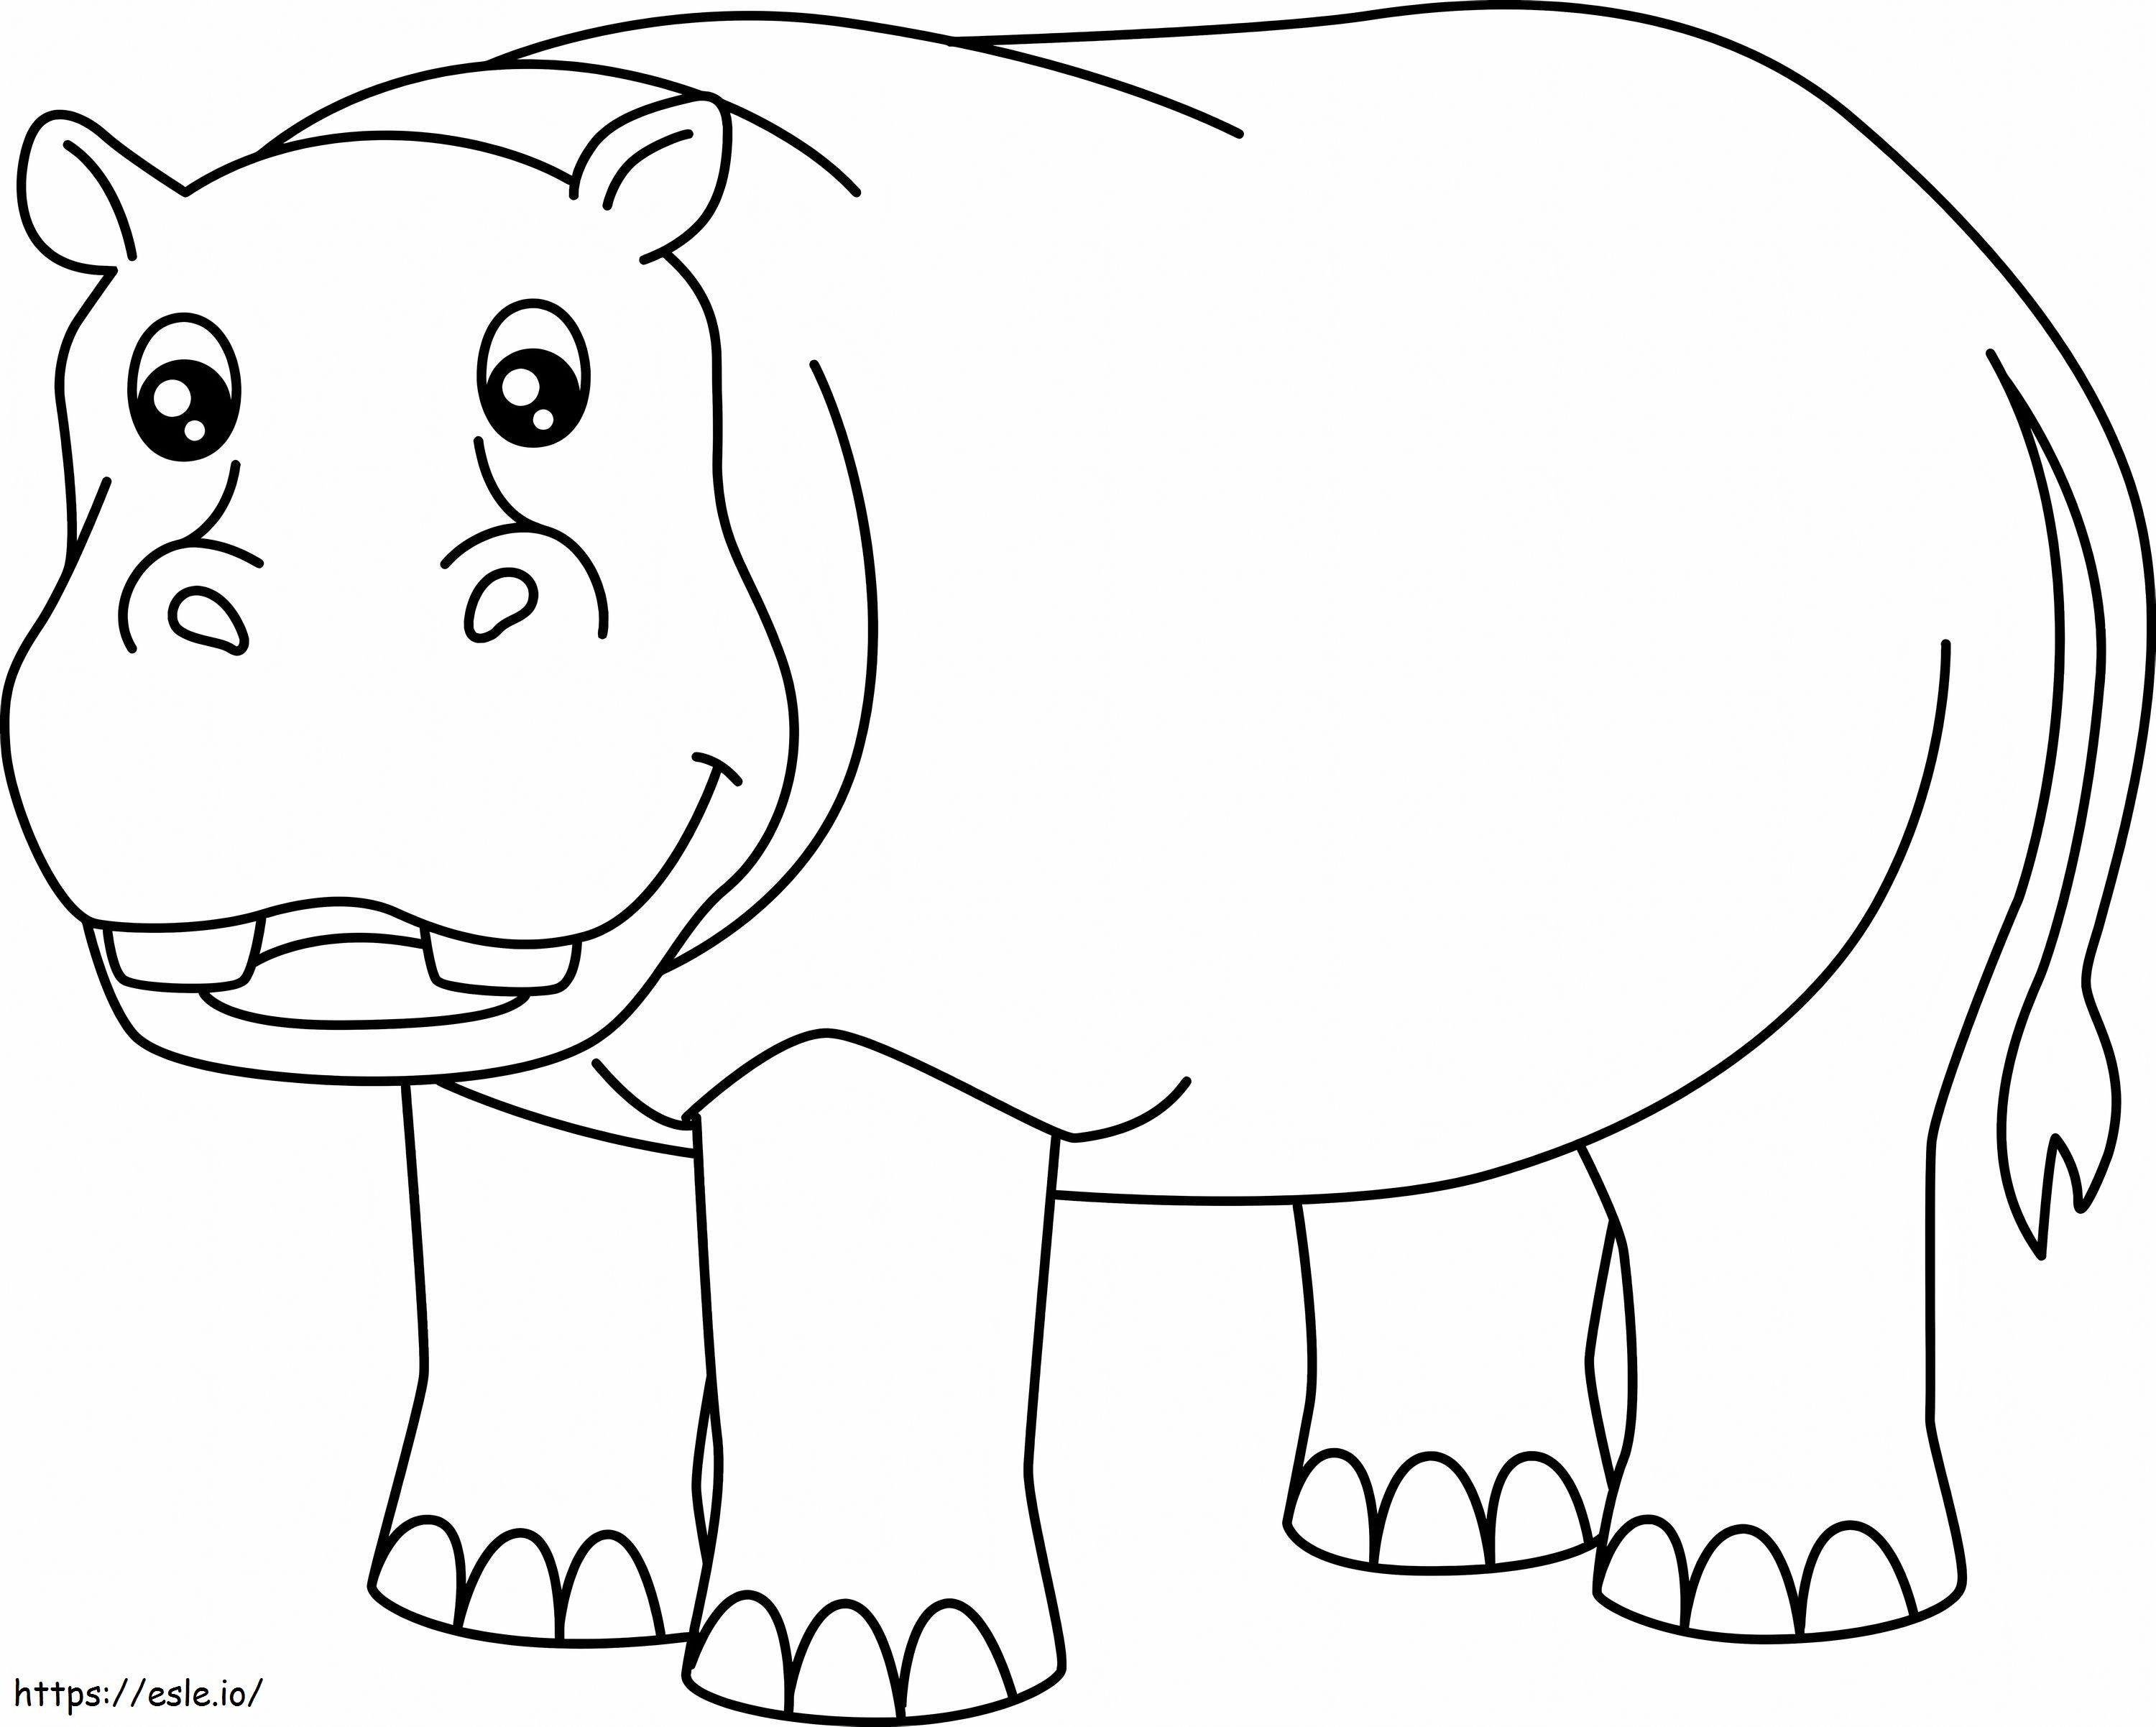 Um hipopótamo impressionante para colorir